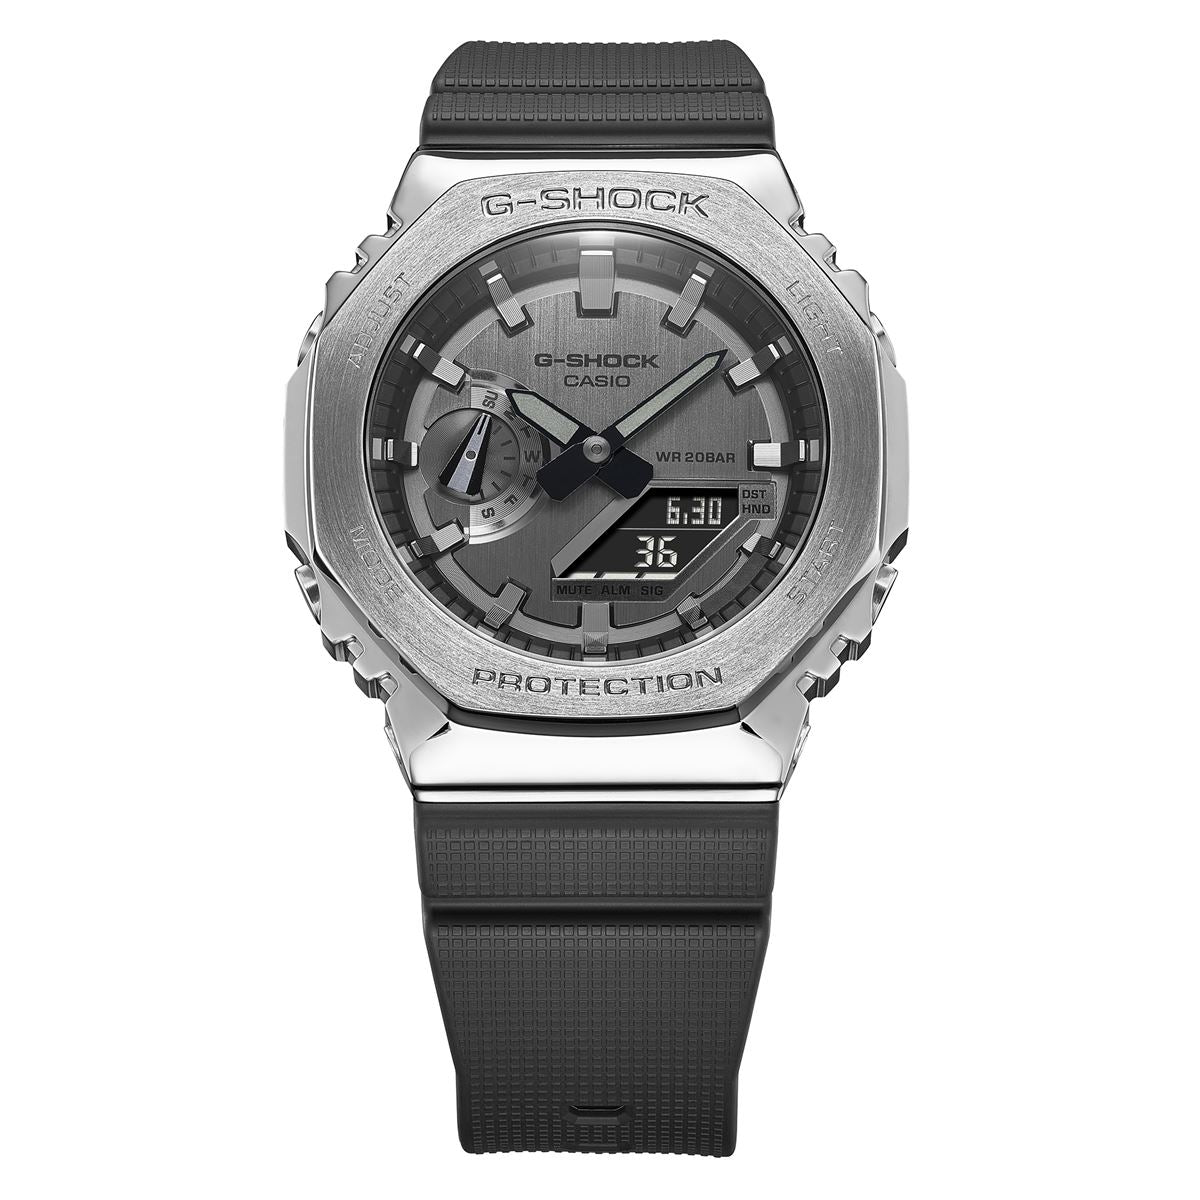 G-SHOCK Gショック メタル カシオ CASIO 腕時計 メンズ グレー